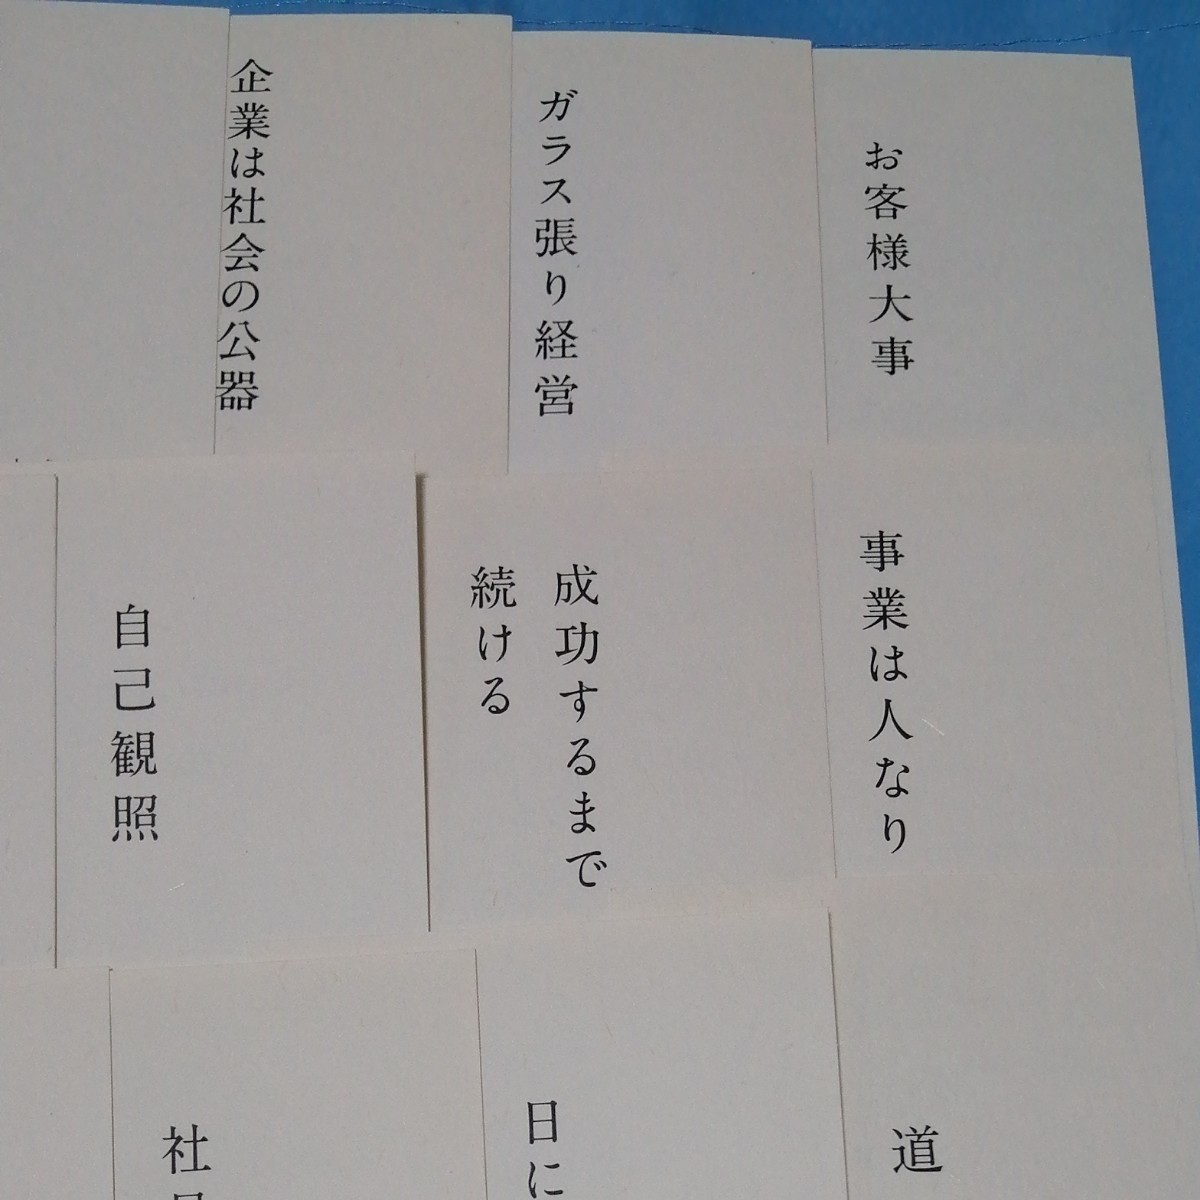 パナソニックミュージアム 松下幸之助氏の名言が書かれたカード全種類30枚セットです